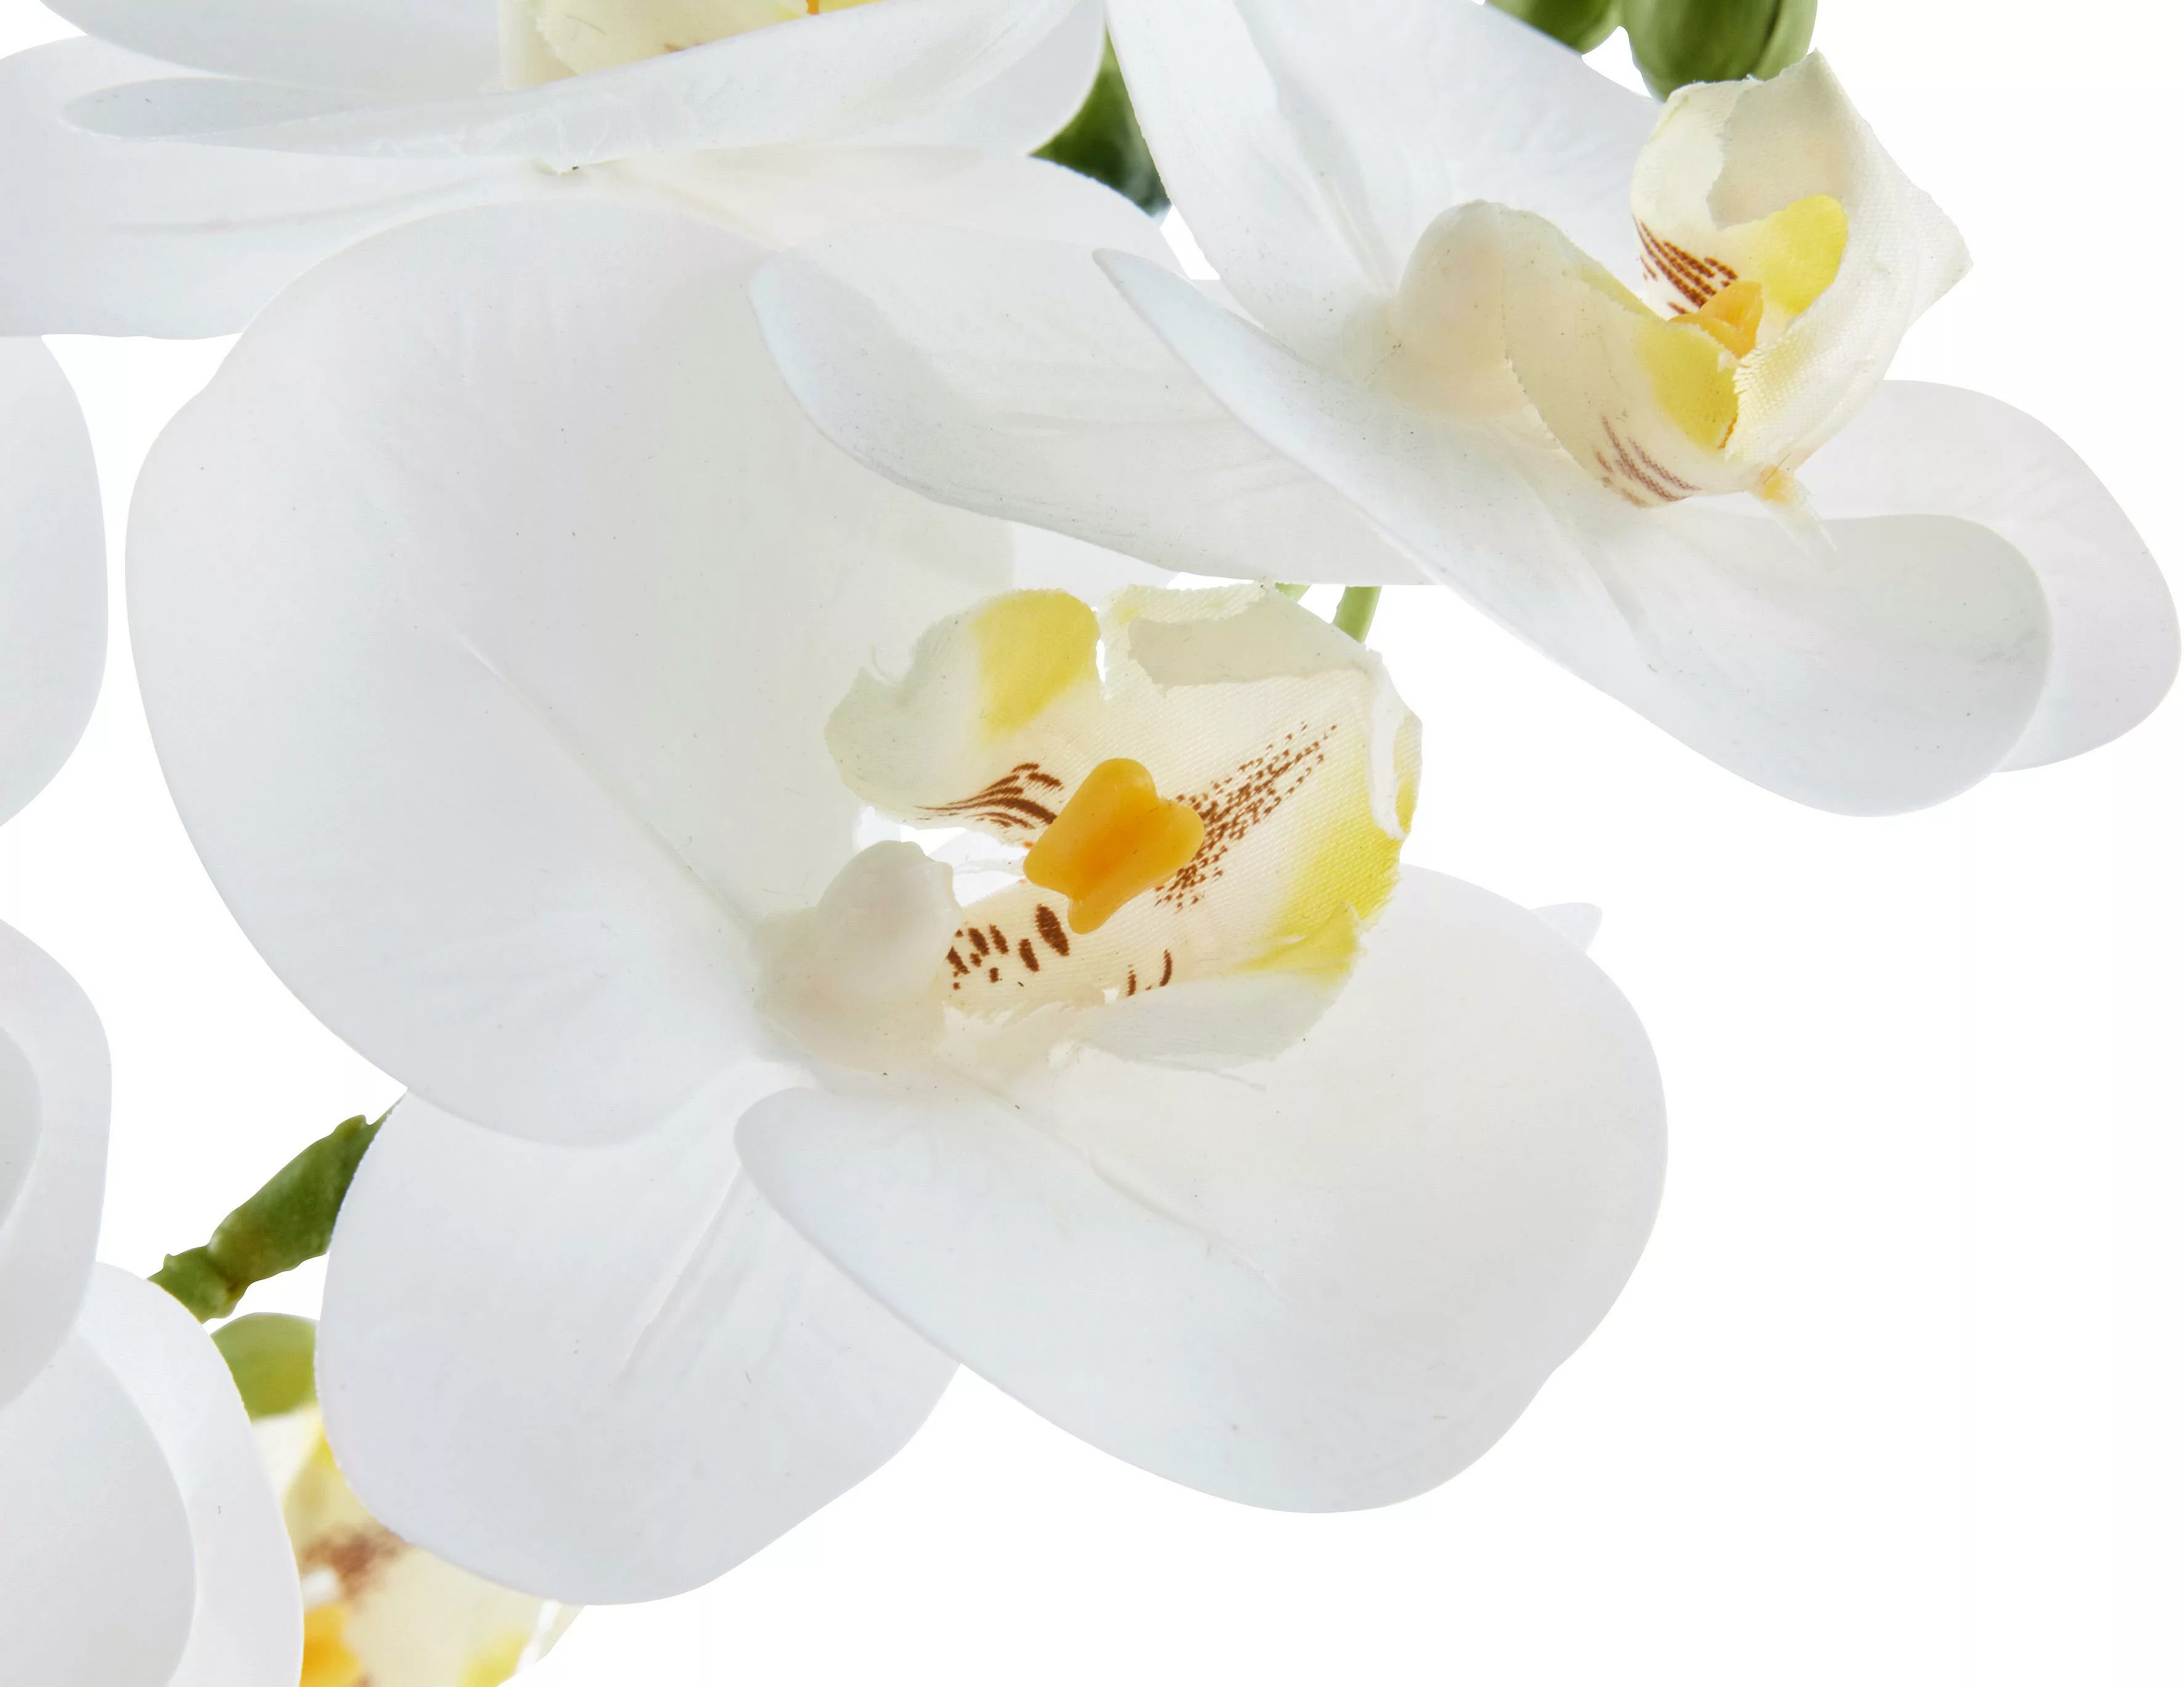 Leonique Kunstpflanze "Orchidee", Kunstorchidee, im Topf günstig online kaufen